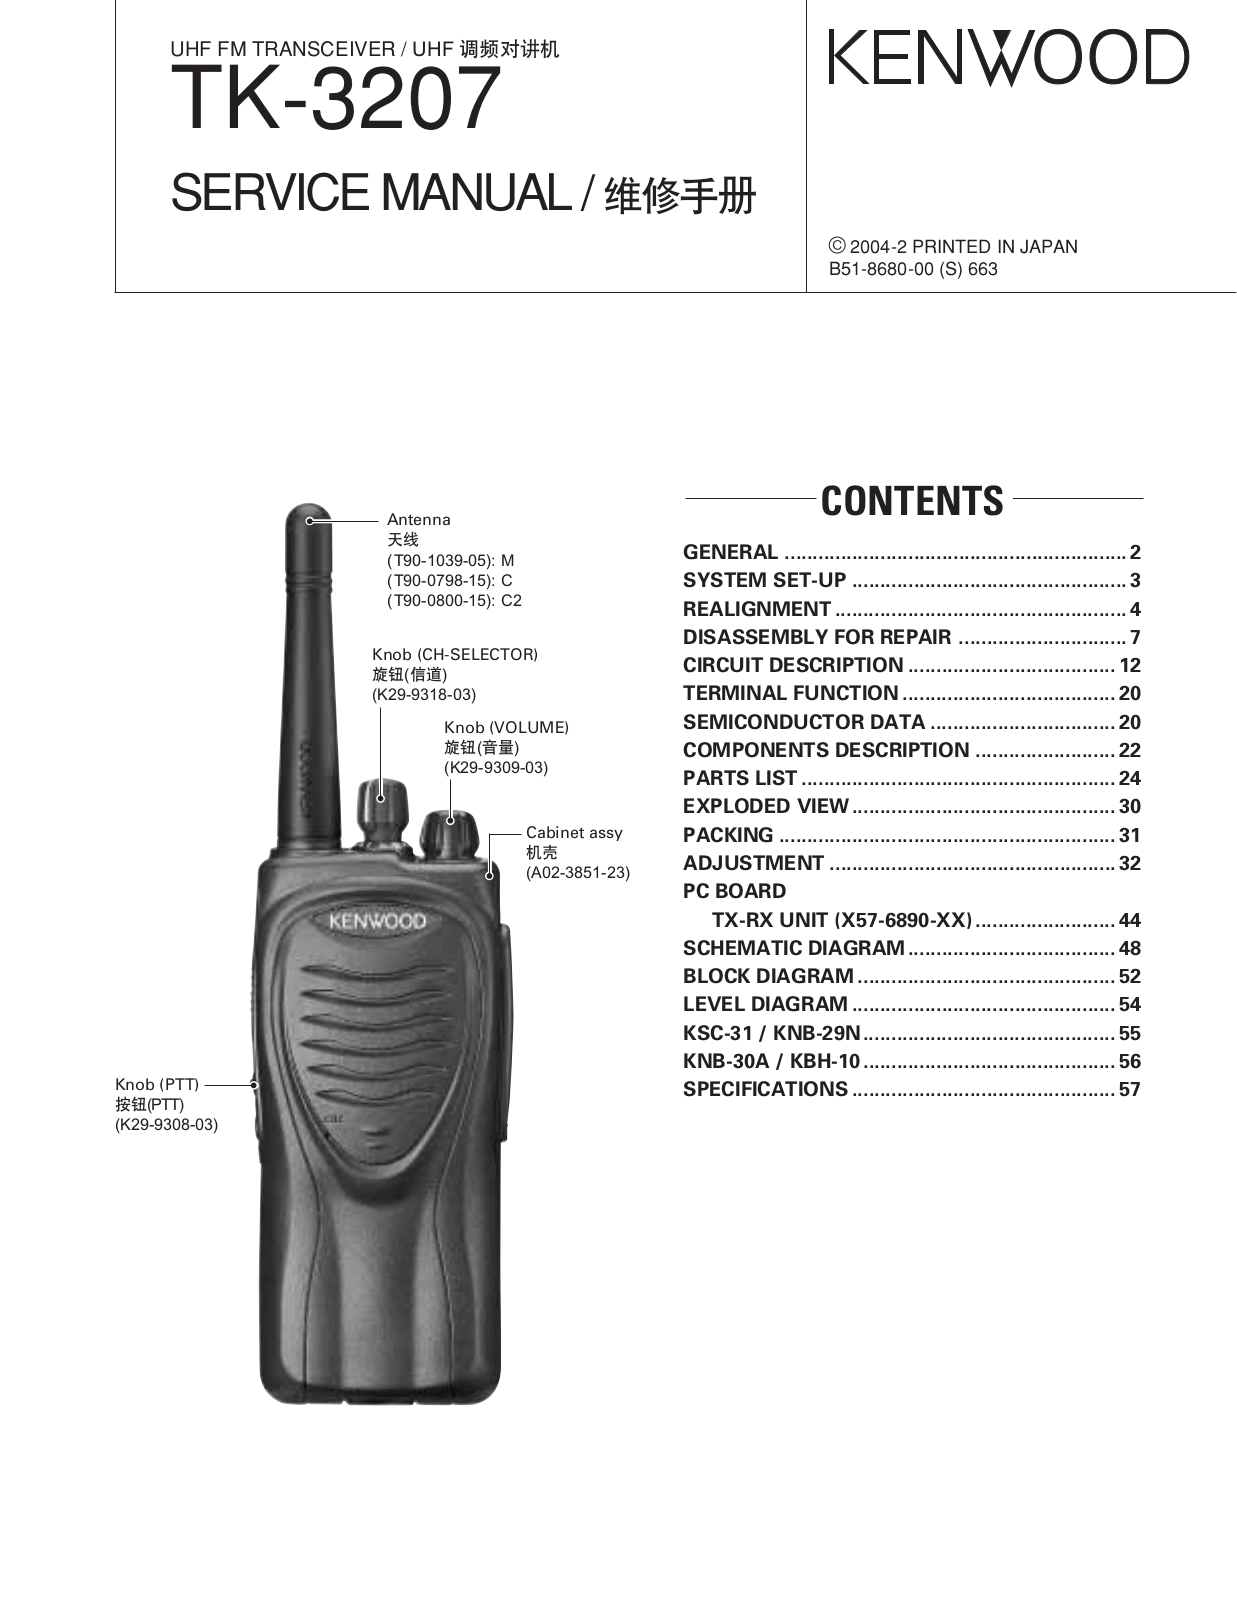 Kenwood TK-2307 Service manual